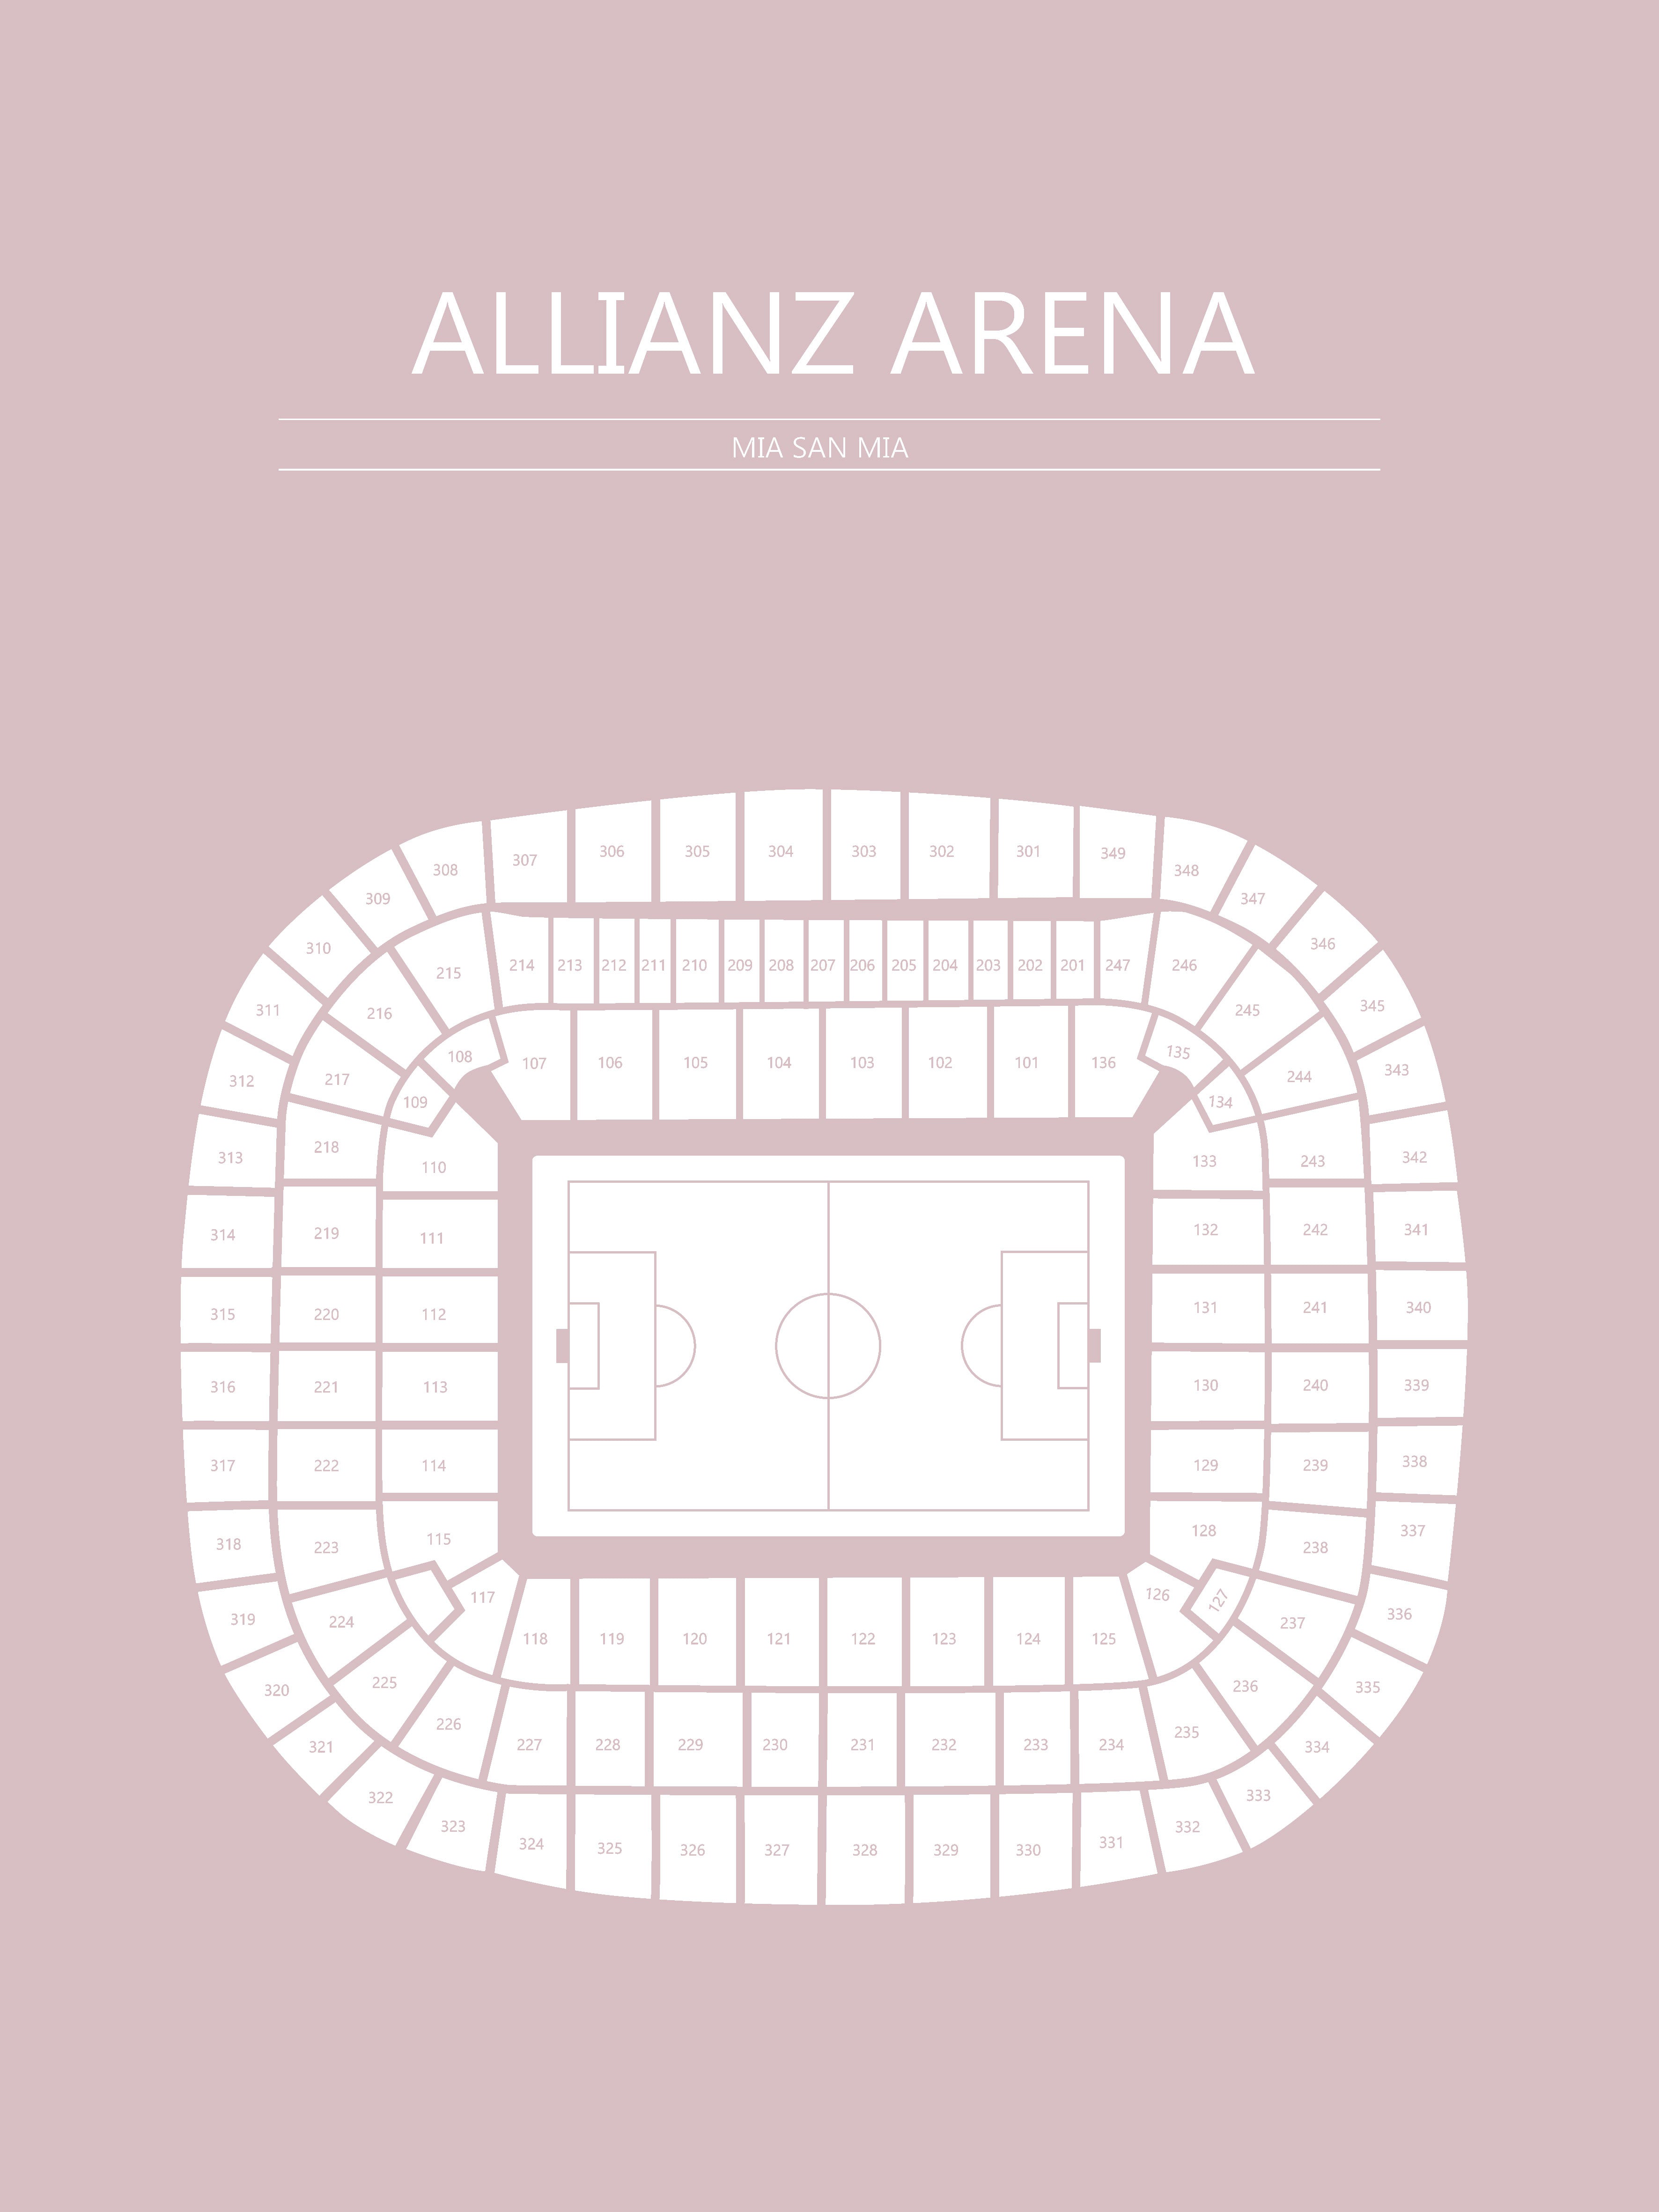 Fodbold plakat Bayern München Allianz Arena Lyserød